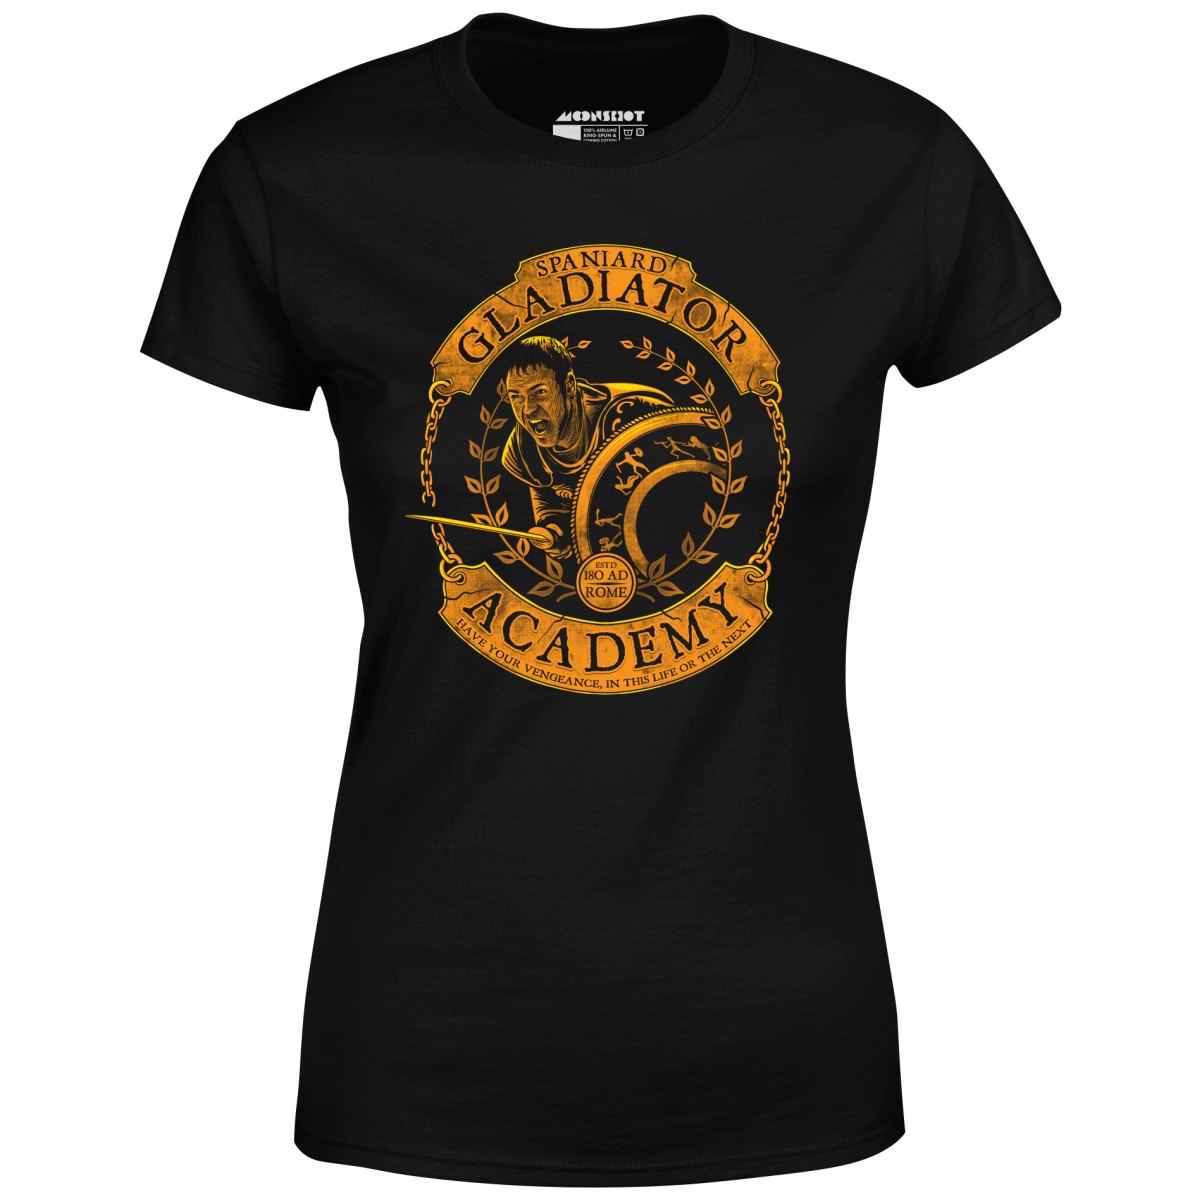 Spaniard Gladiator Academy - Women's T-Shirt